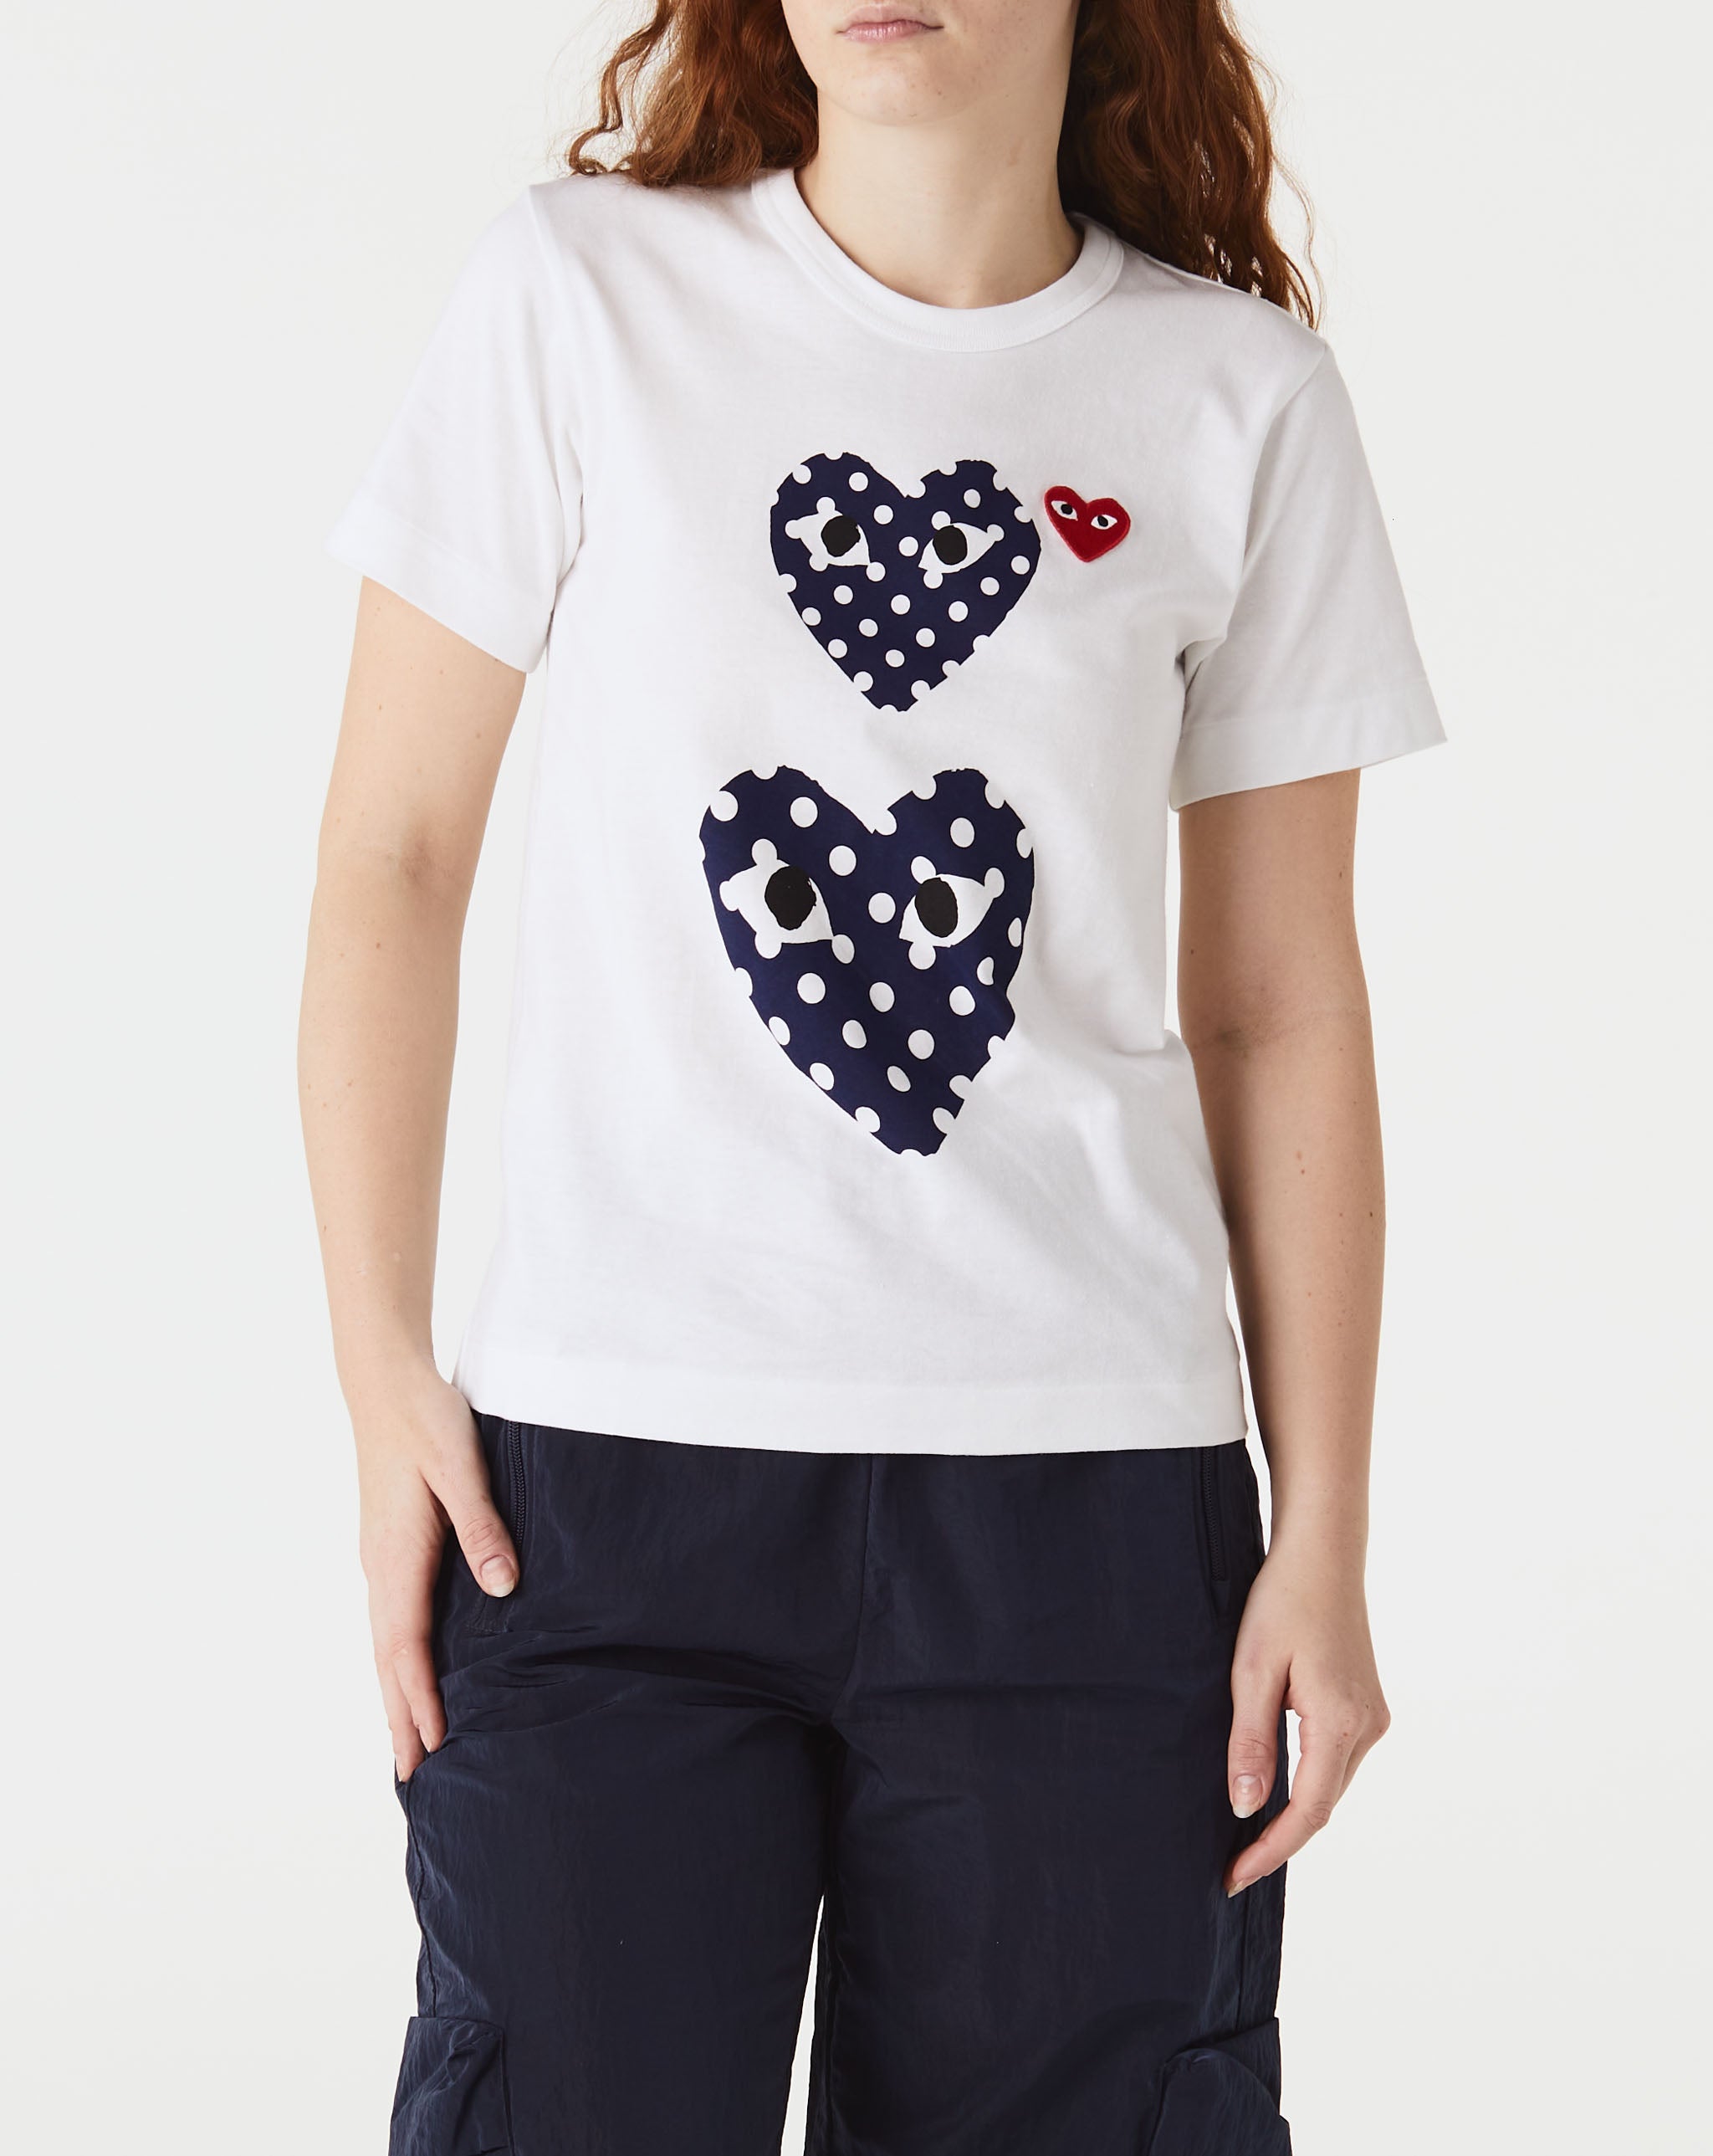 Womens Double Camo Heart T-Shirt Women's Double Polka Dot Heart T-Shirt  - Cheap Urlfreeze Jordan outlet